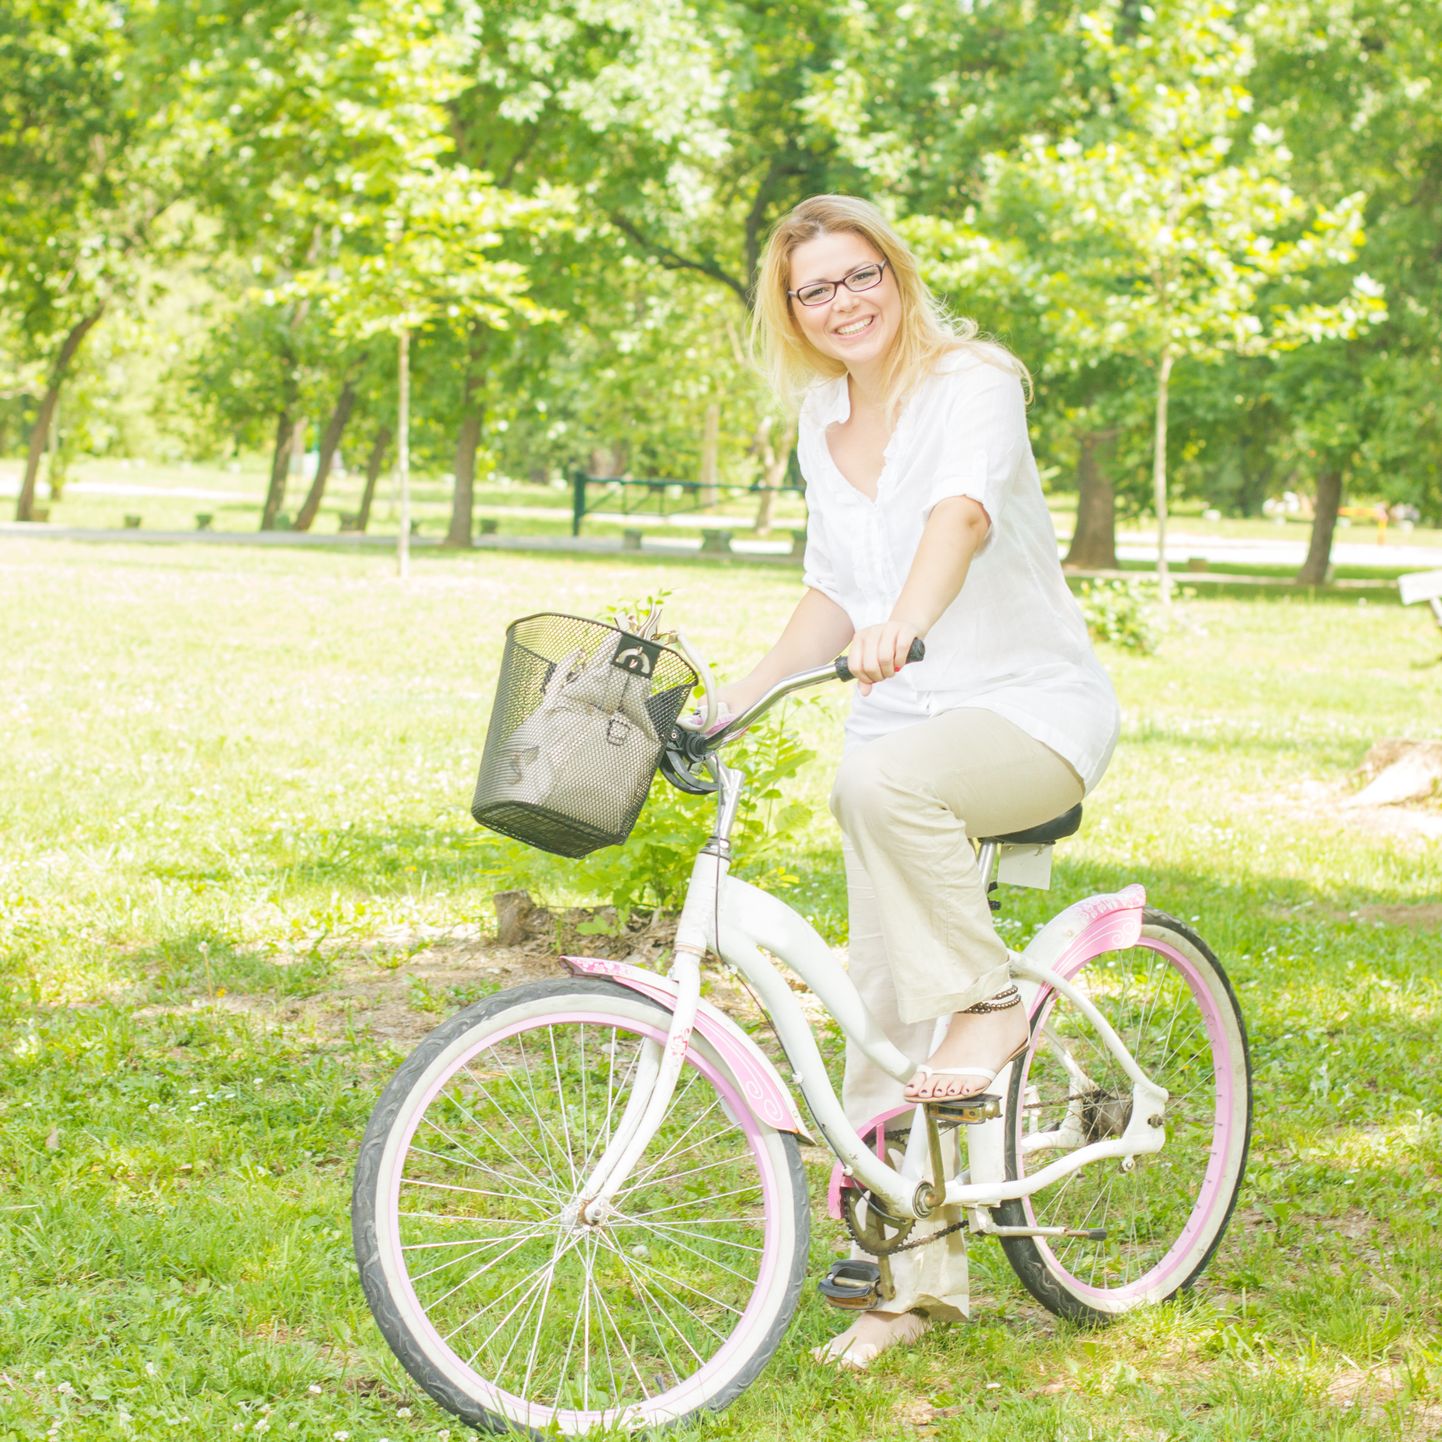 Женщина на велосипеде. Иллюстративное фото.